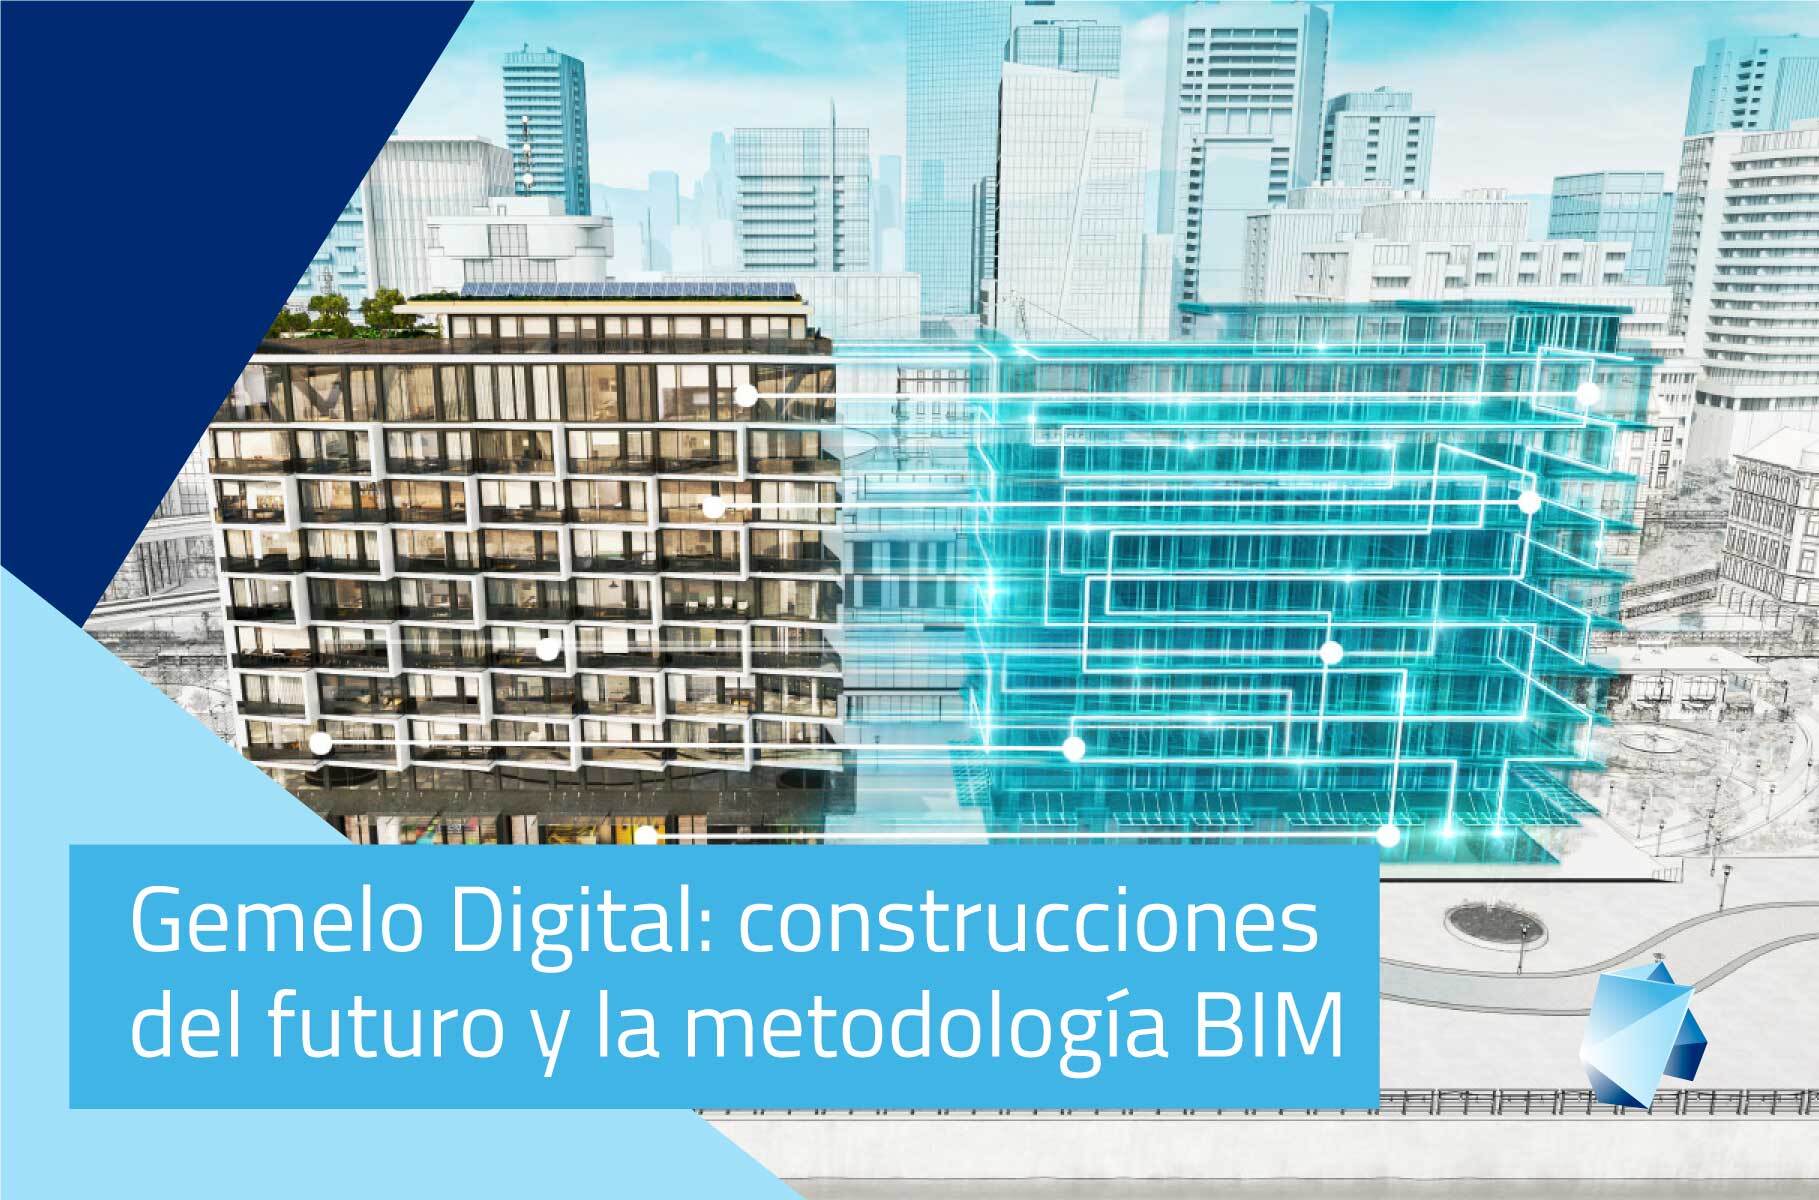 Gemelo Digital: Construcciones del futuro y la metodología BIM